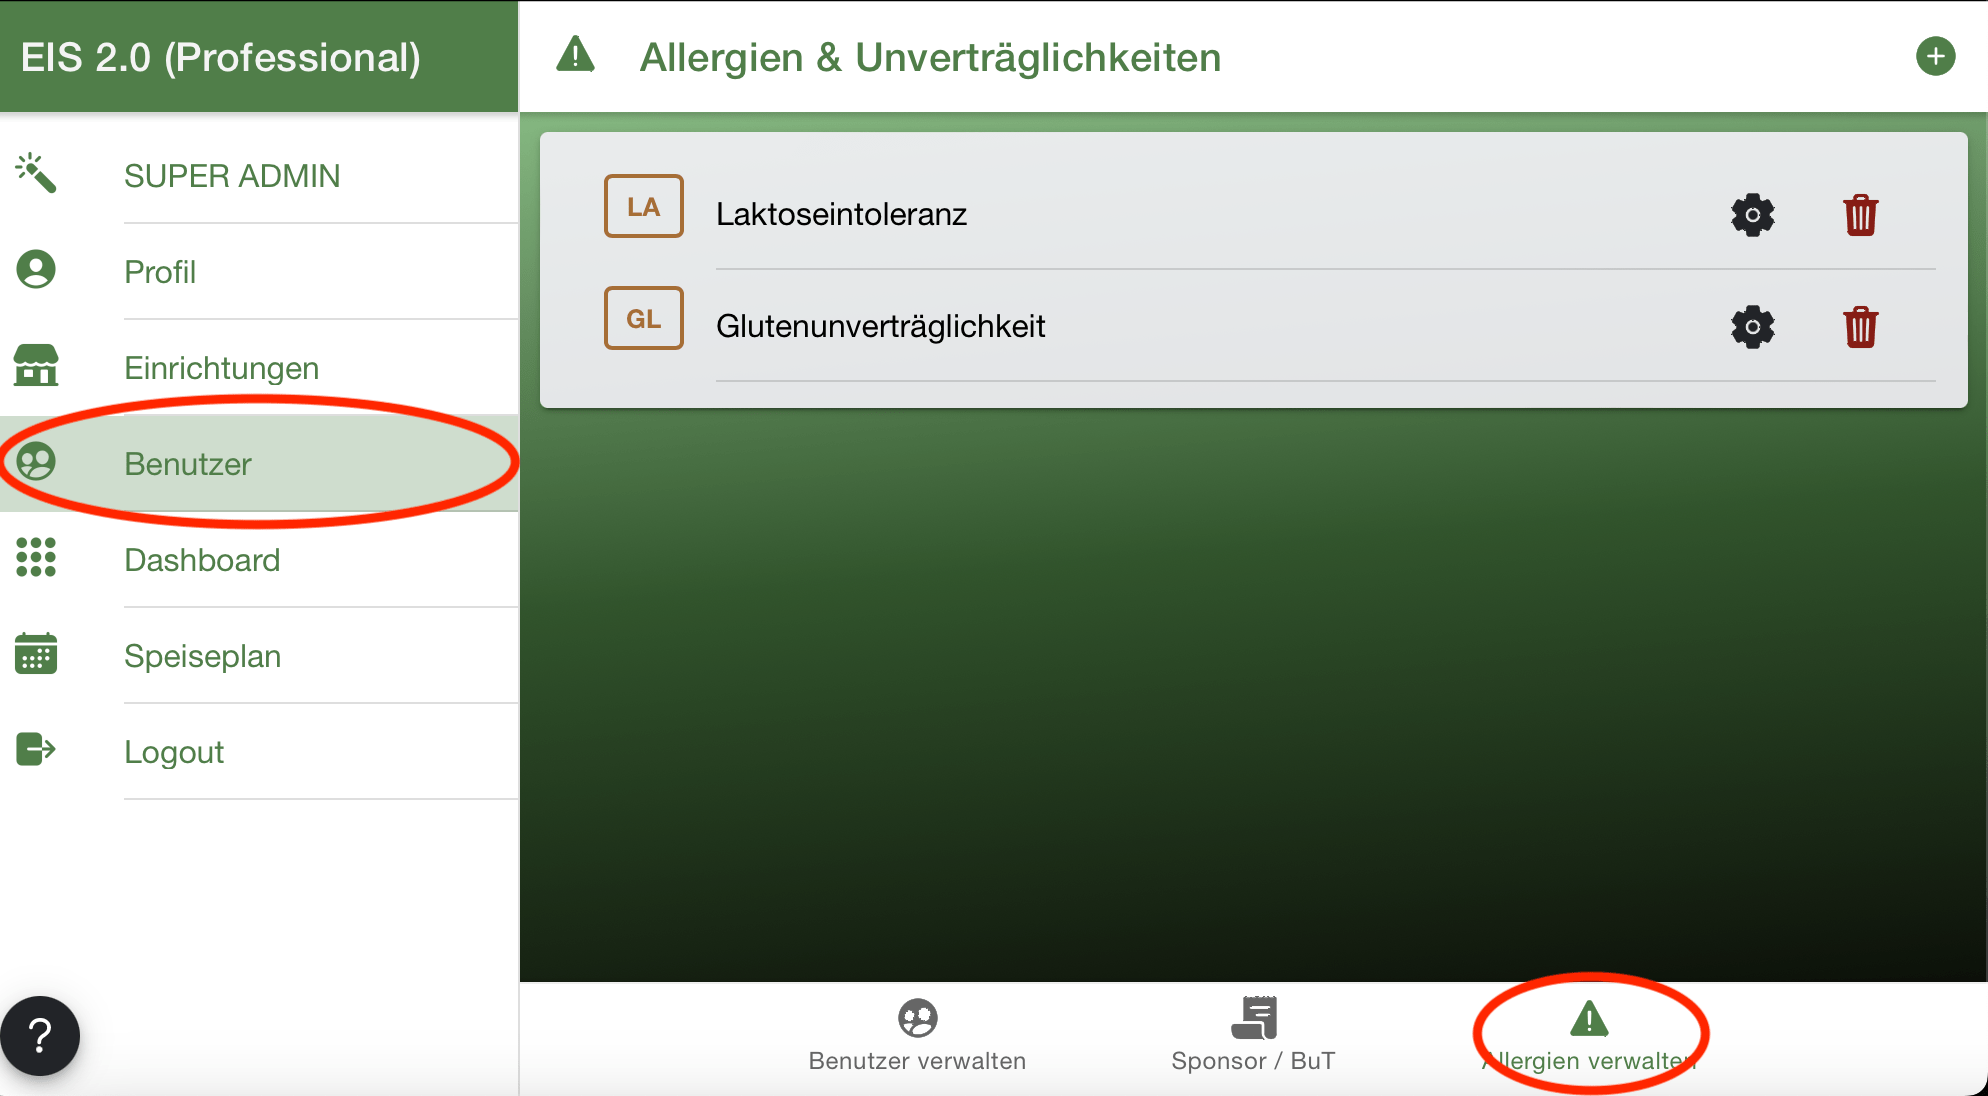 Tab Benutzer Allergien verwalten - EIS 2.0 Bestellsystem